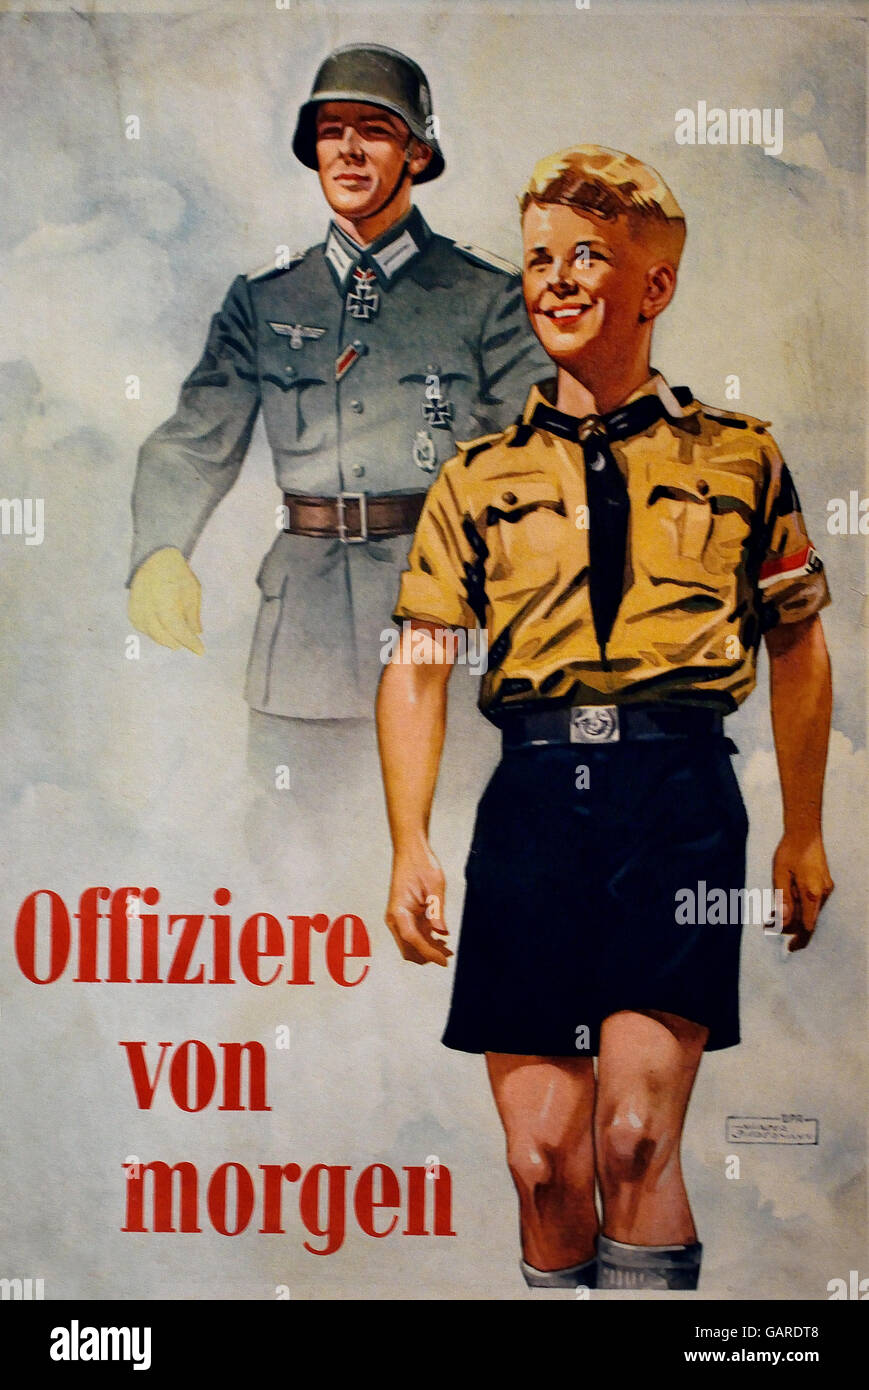 Offiziere von Morgen - Offiziere von morgen Nazideutschland (Werbeplakat für die Wehrmacht) Stockfoto